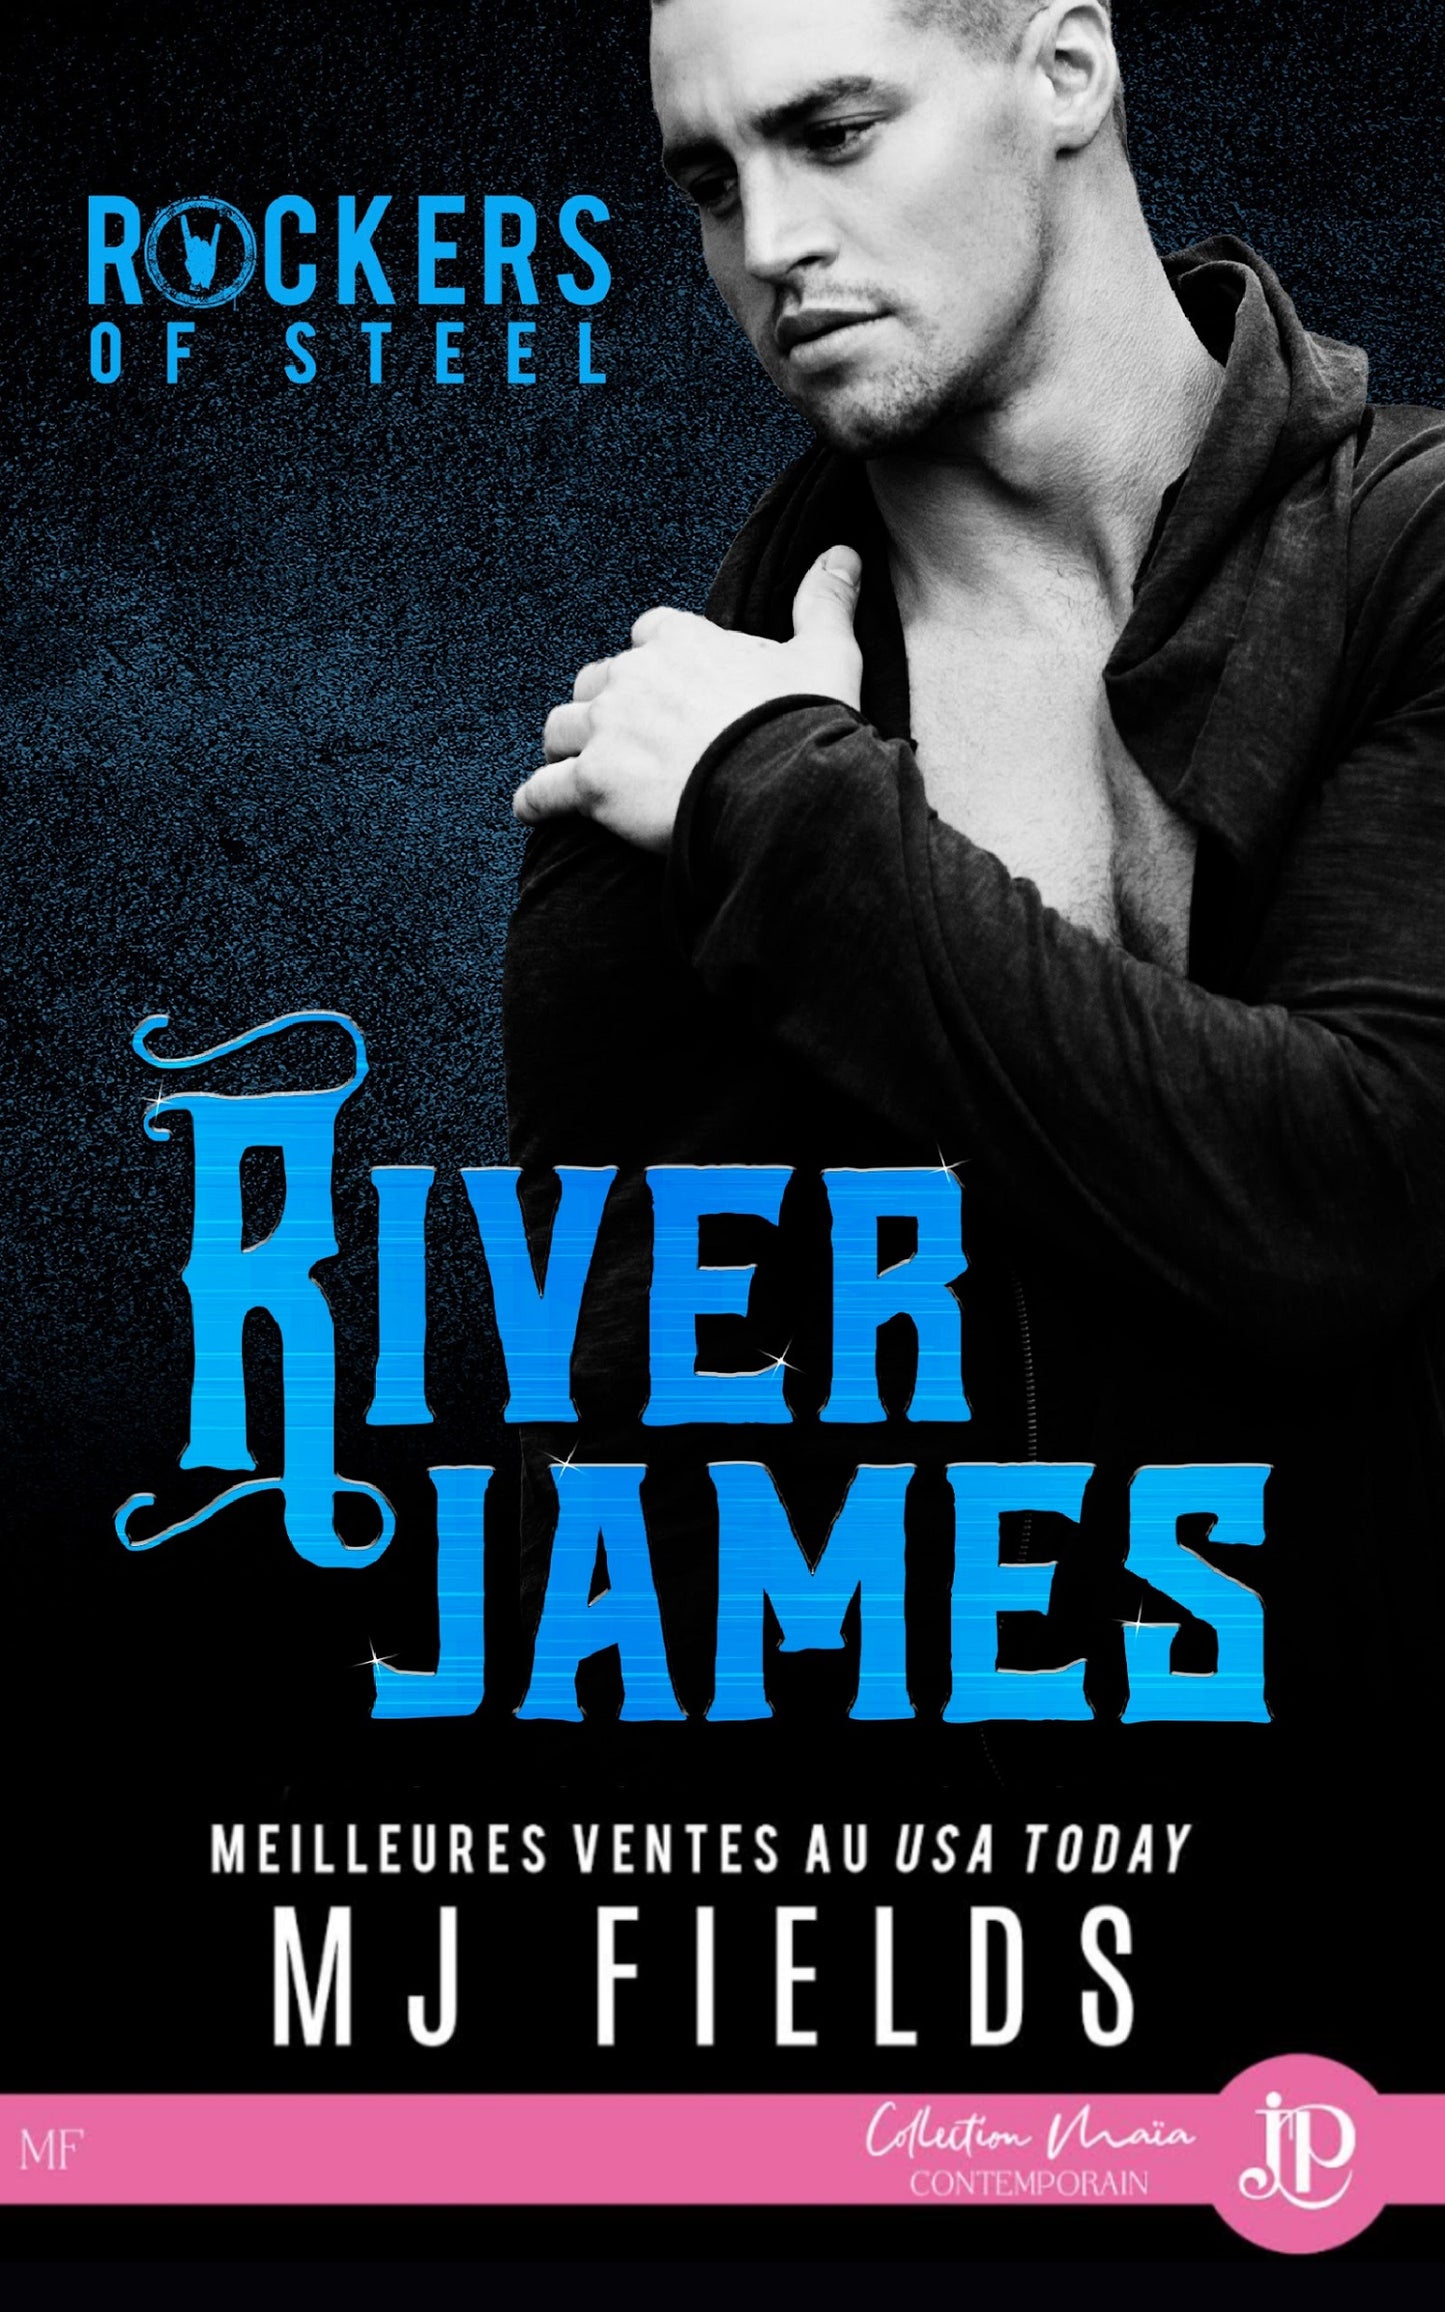 Rockers of Steel #3 : River James